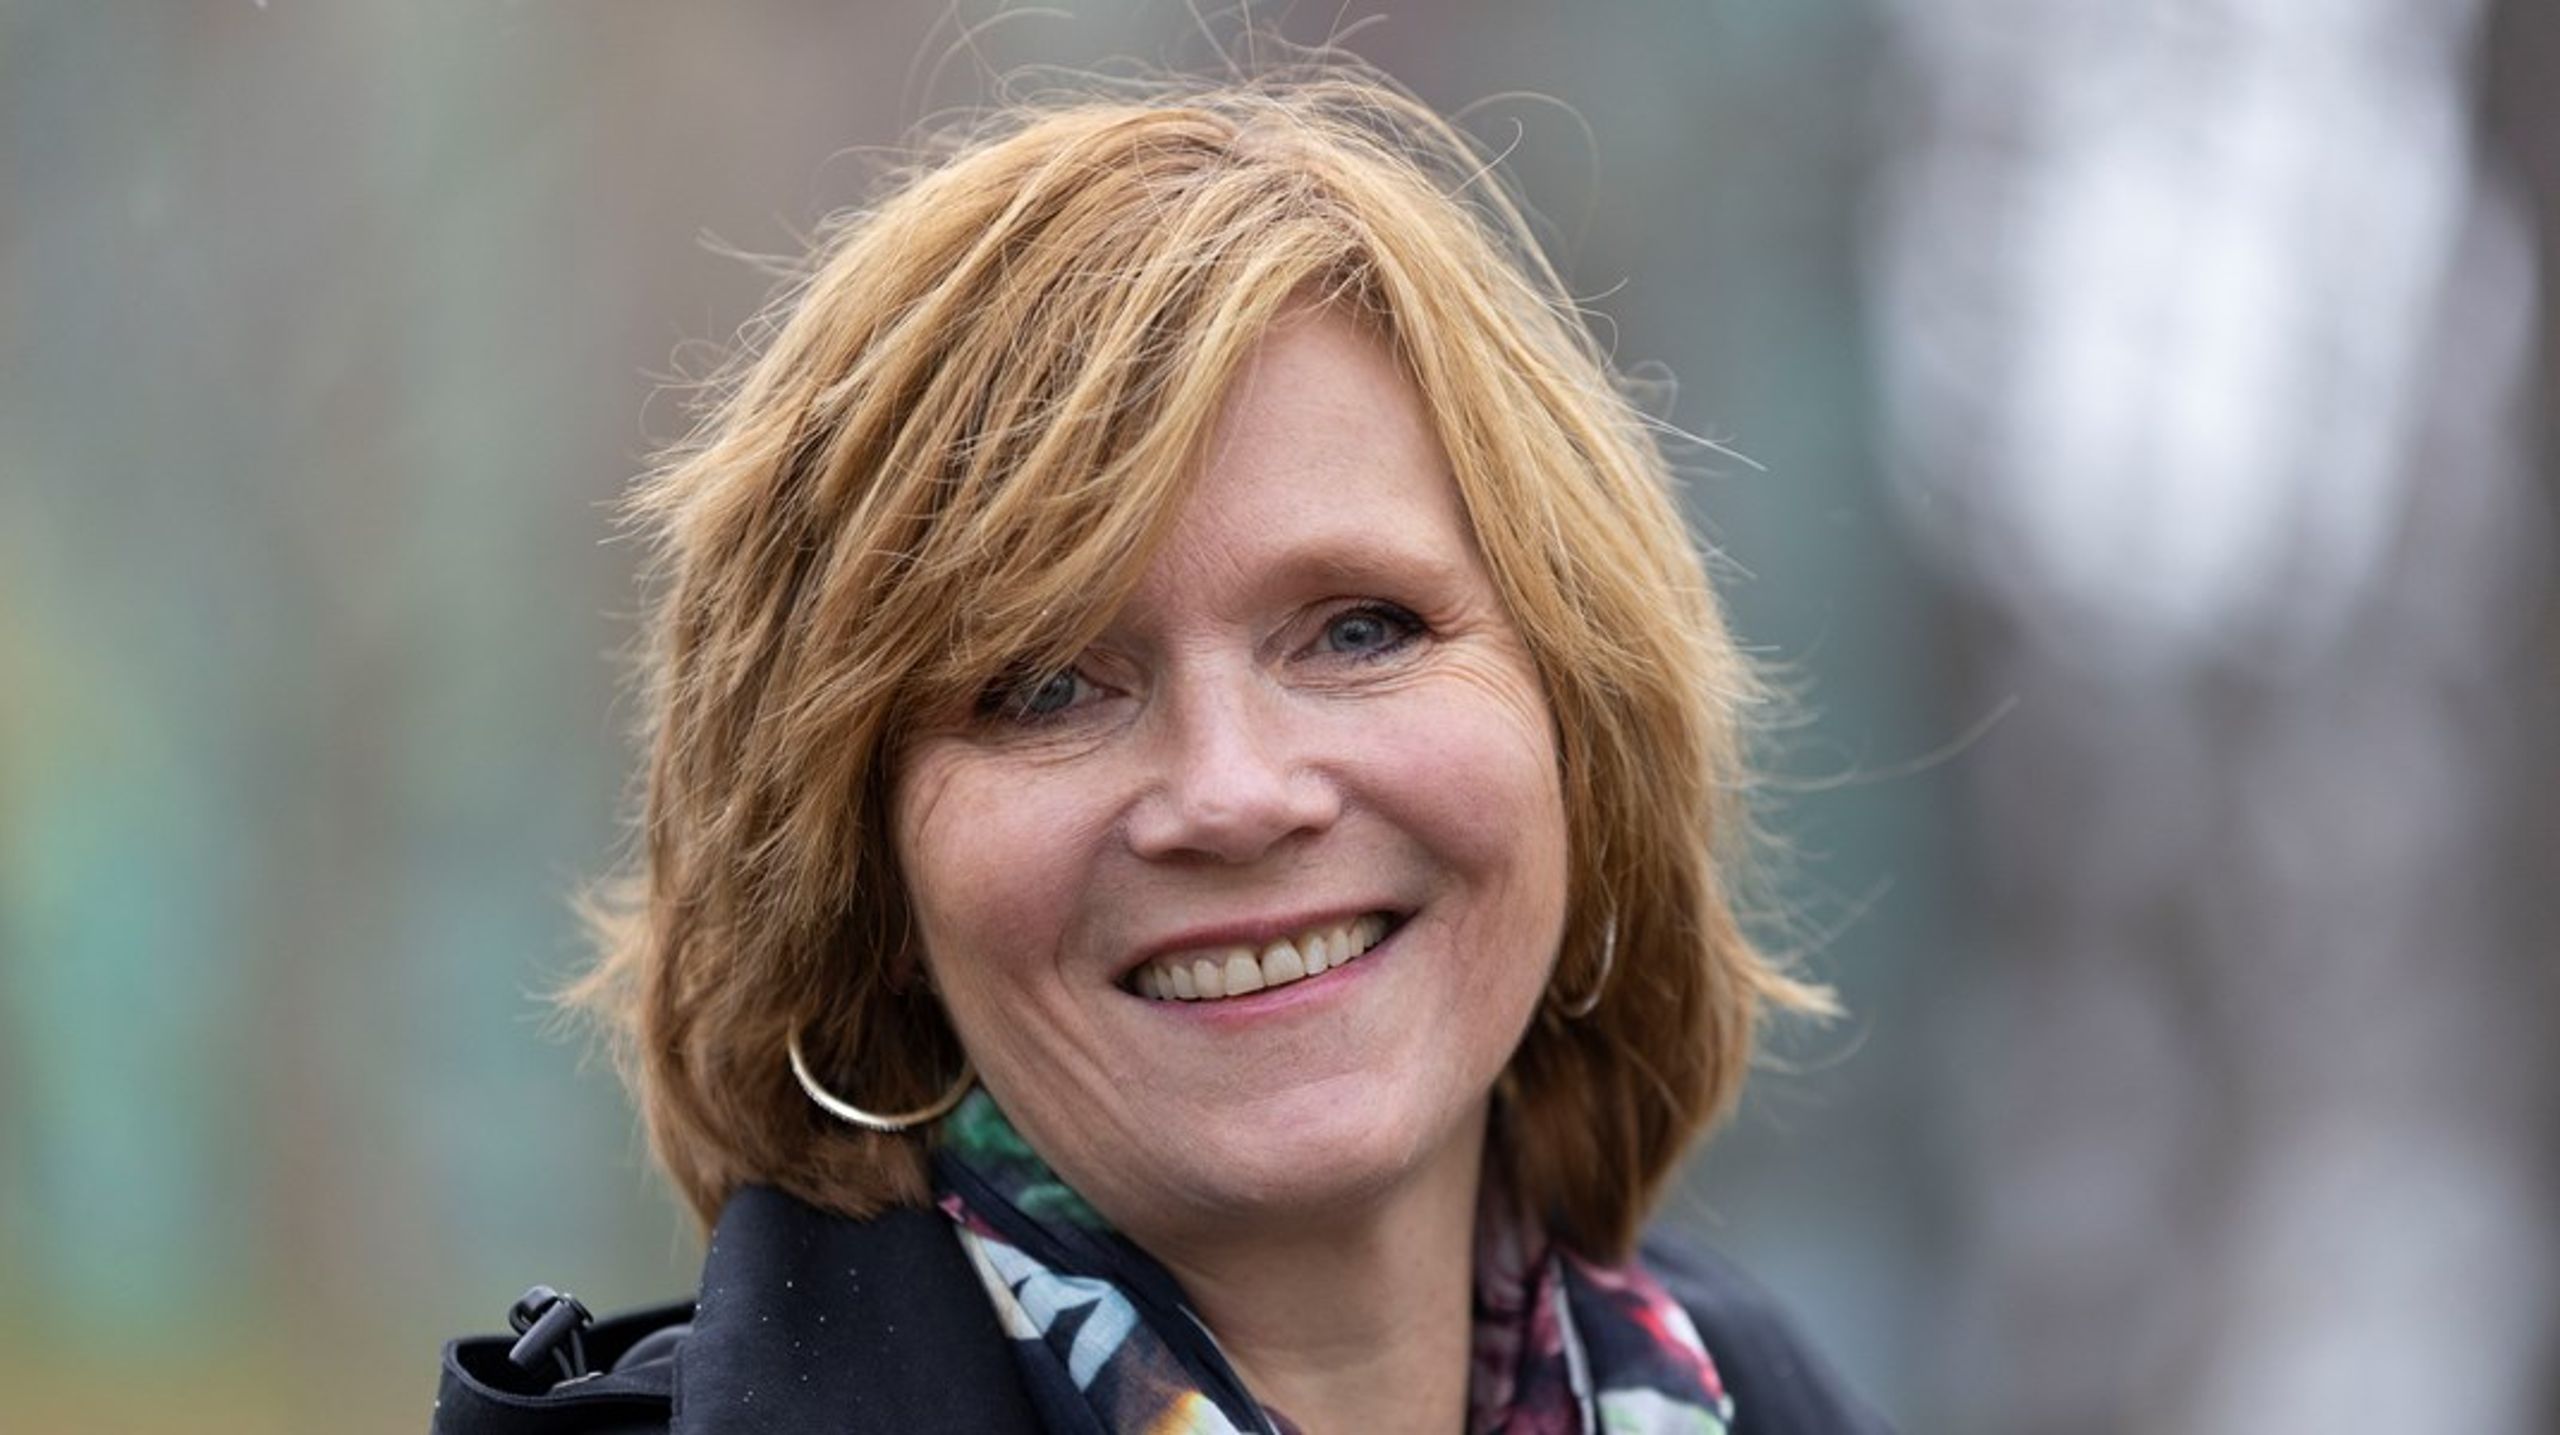 Christine Meyer er leder i Kvinnehelseutvalget og byrådslederkandidat for Høyre i Bergen. Torsdag presenterer hun utvalgets utredning.